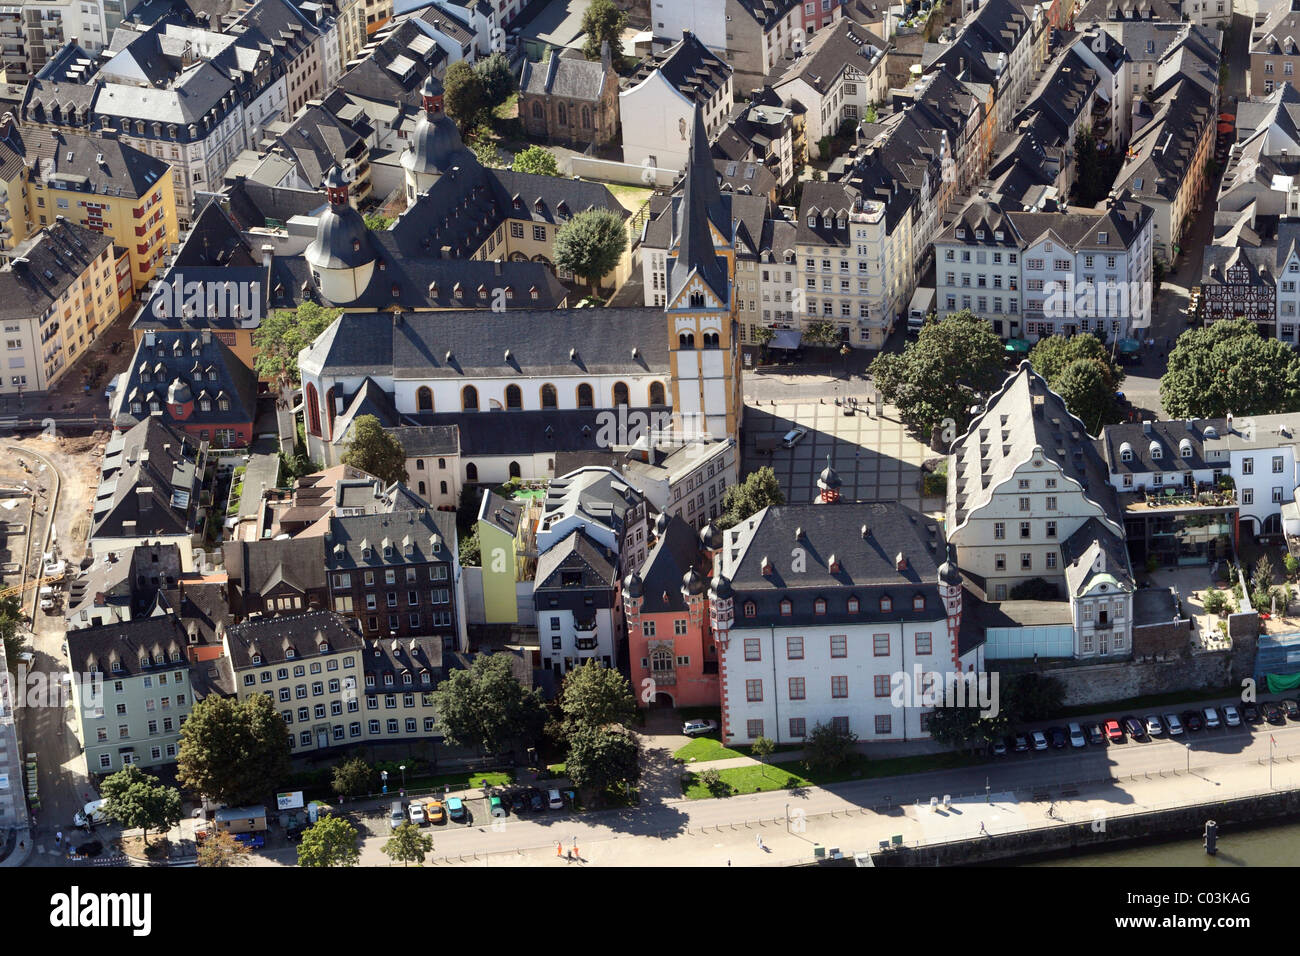 Vue aérienne, centre-ville historique, Koblenz, Rhénanie-Palatinat, Allemagne, Europe Banque D'Images